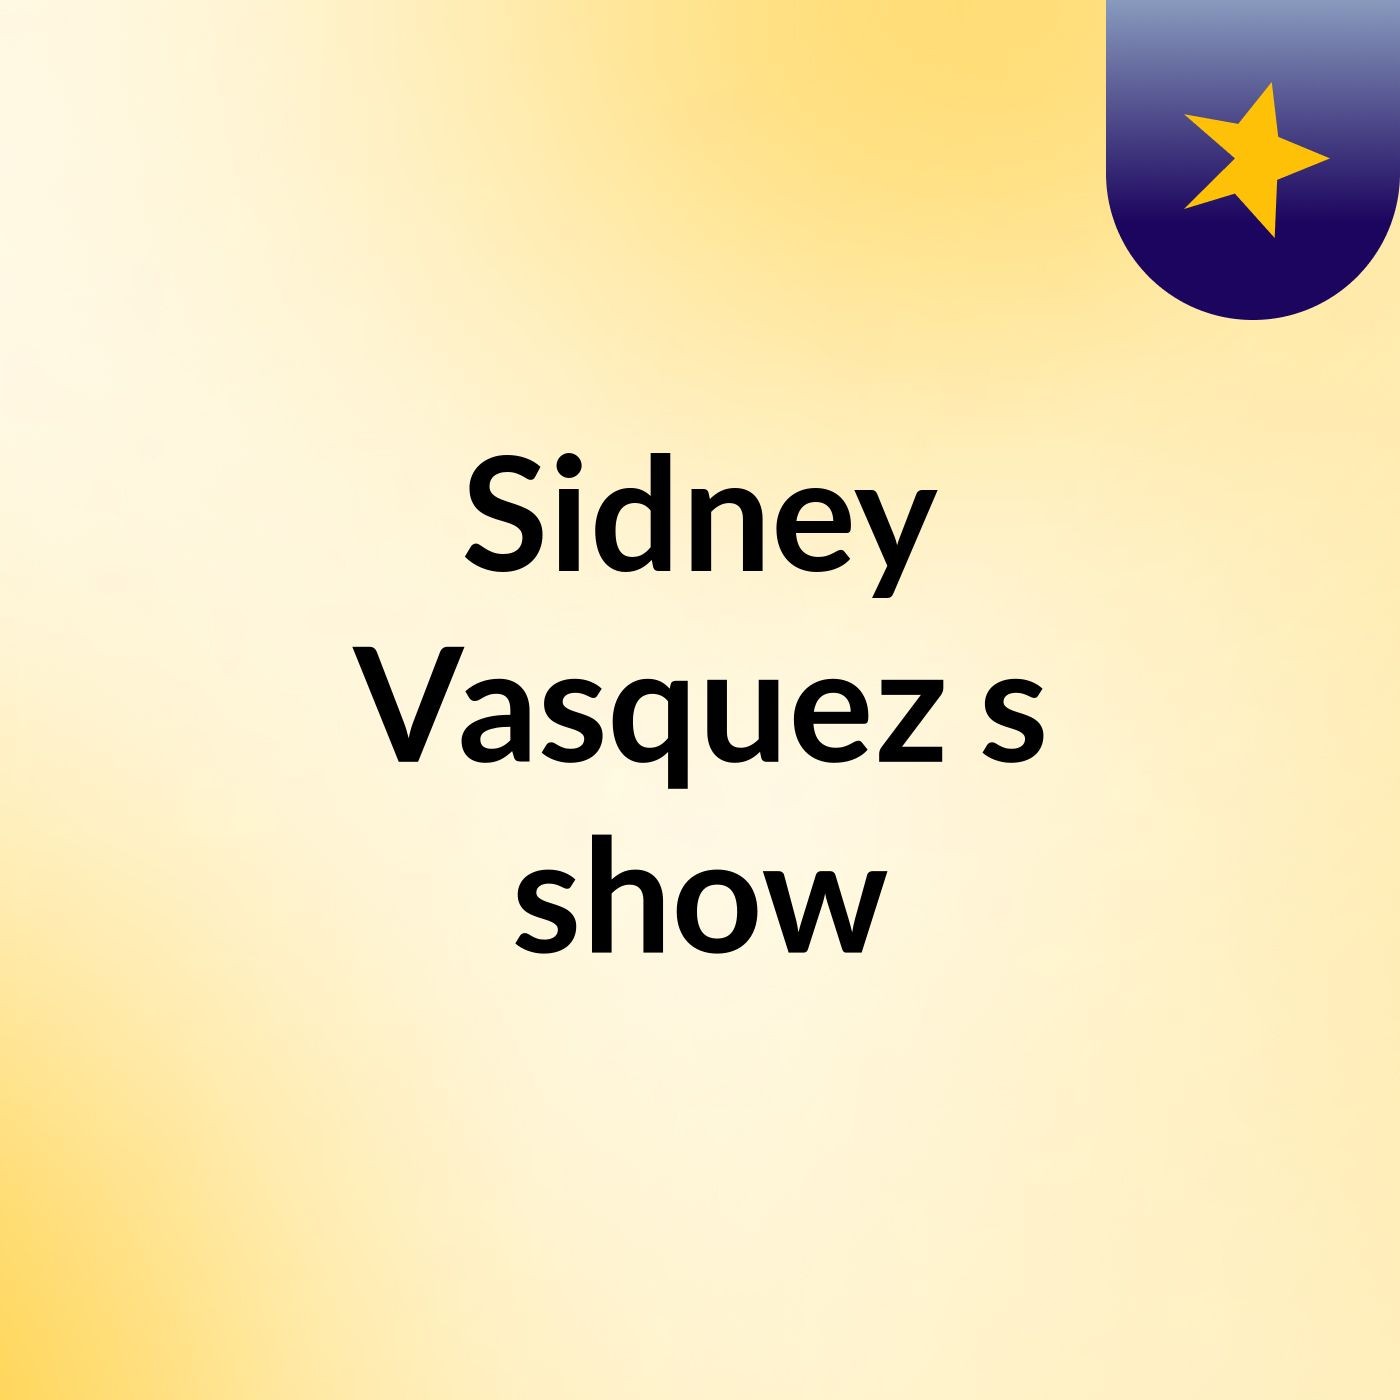 Sidney Vasquez's show